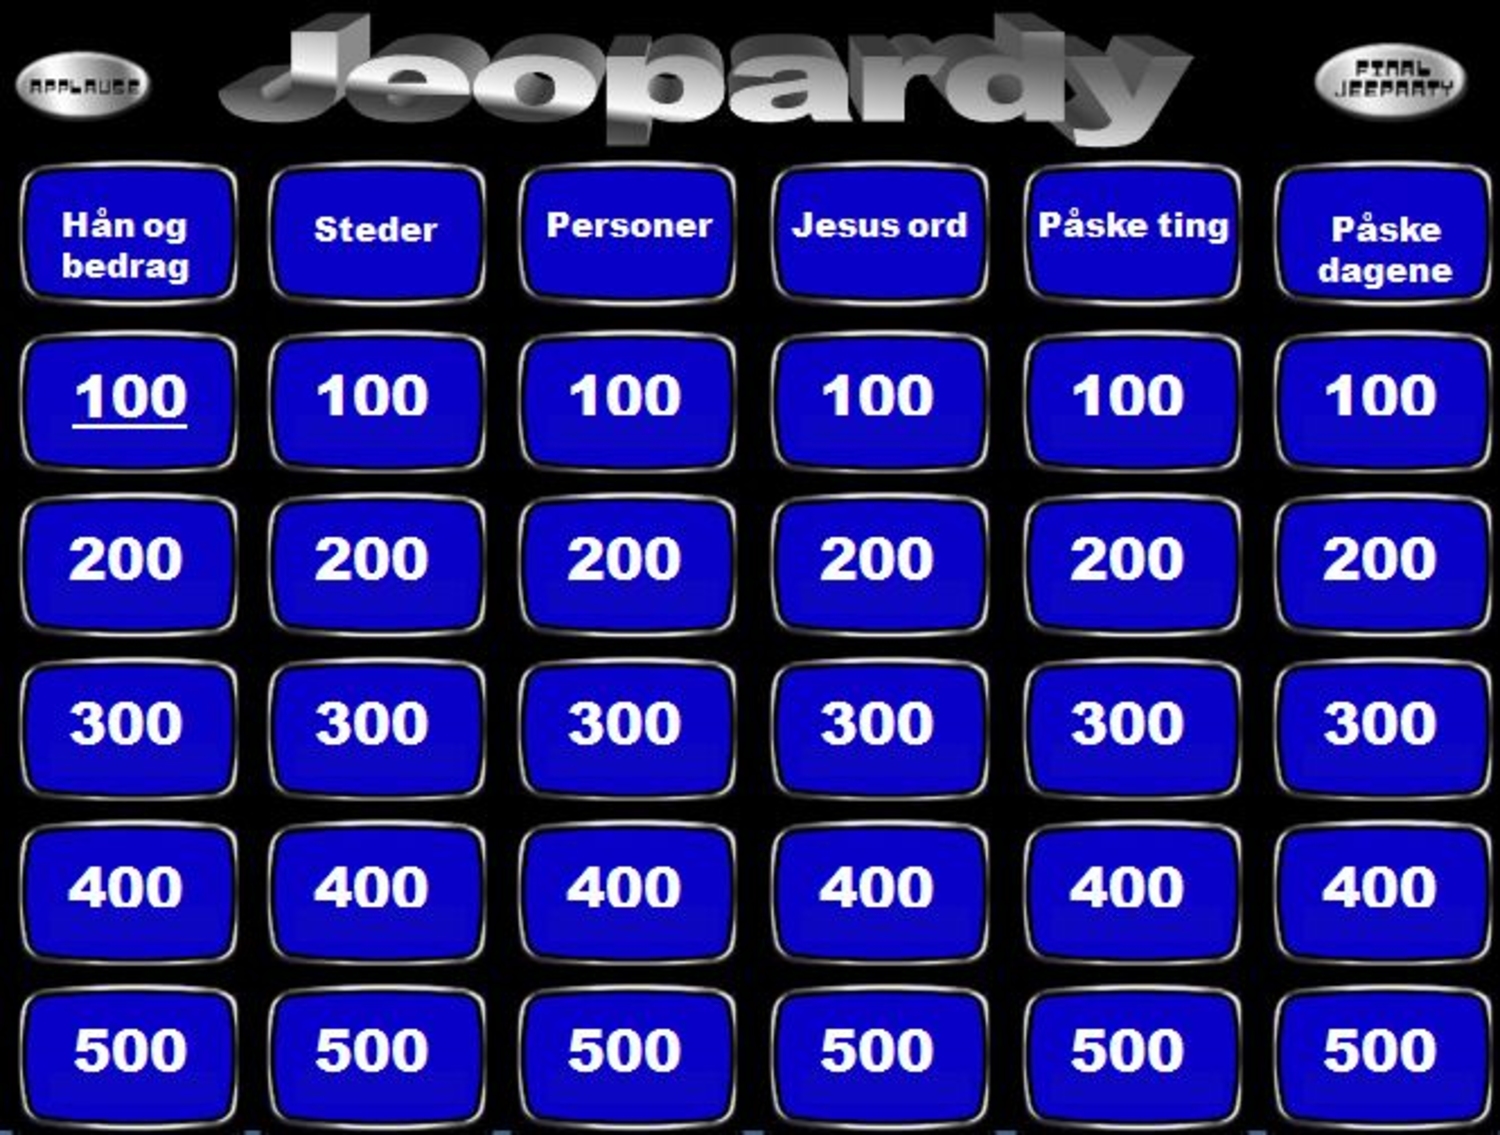 Påske Jeopardy